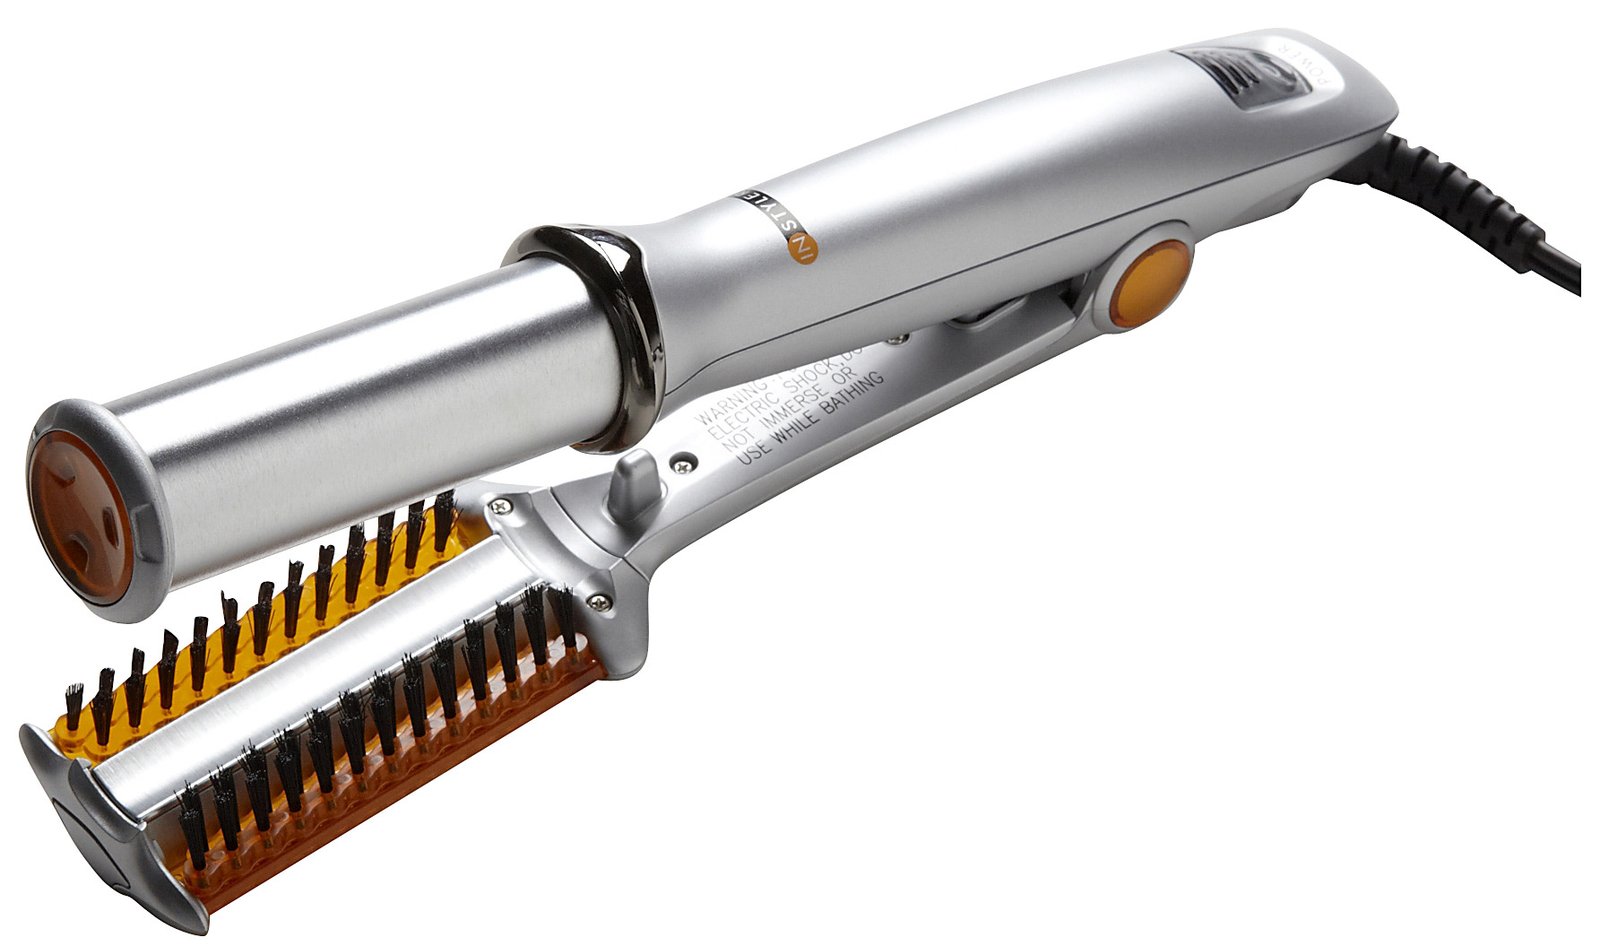 InStyler V2.0 rotating hair iron